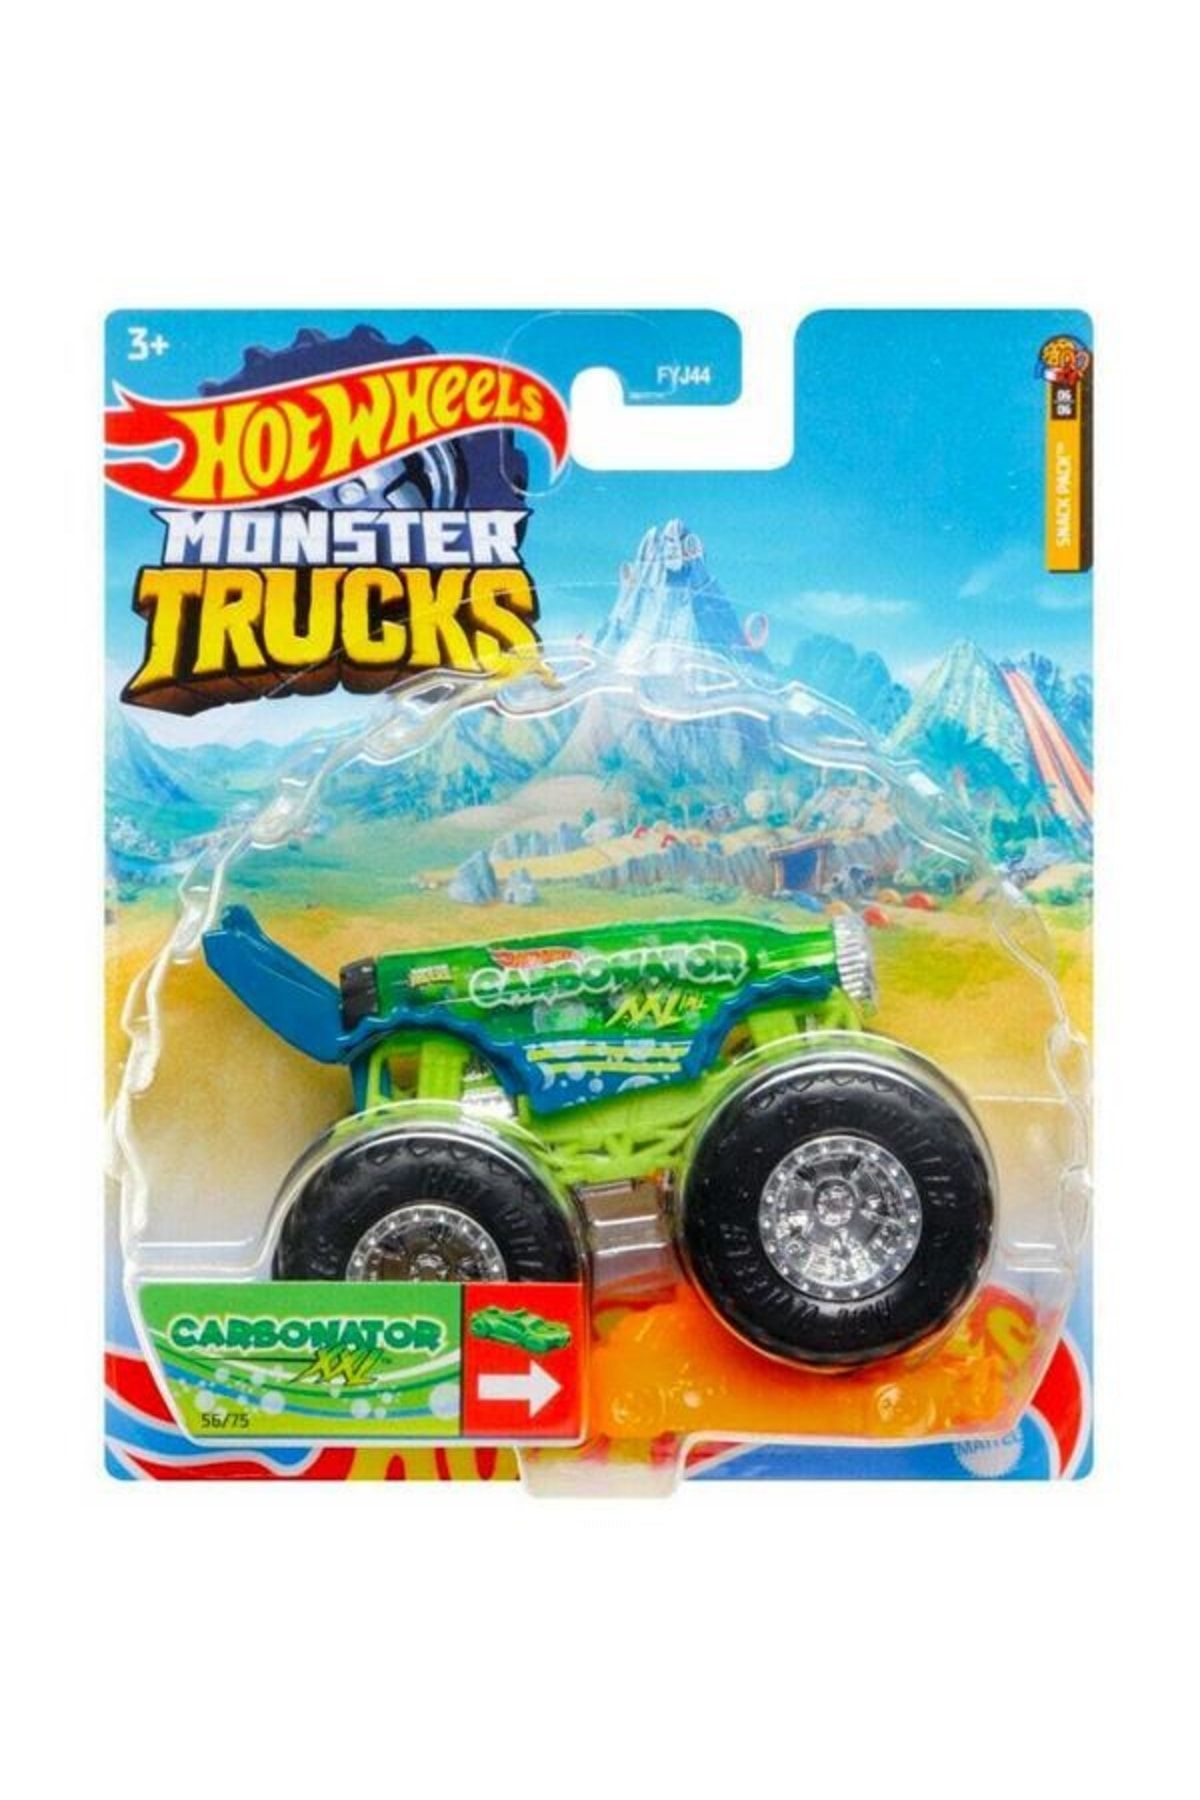 Mattel Hot Wheels Monster Trucks Araba 1:64 Carbonator Snack Pack Hcp35